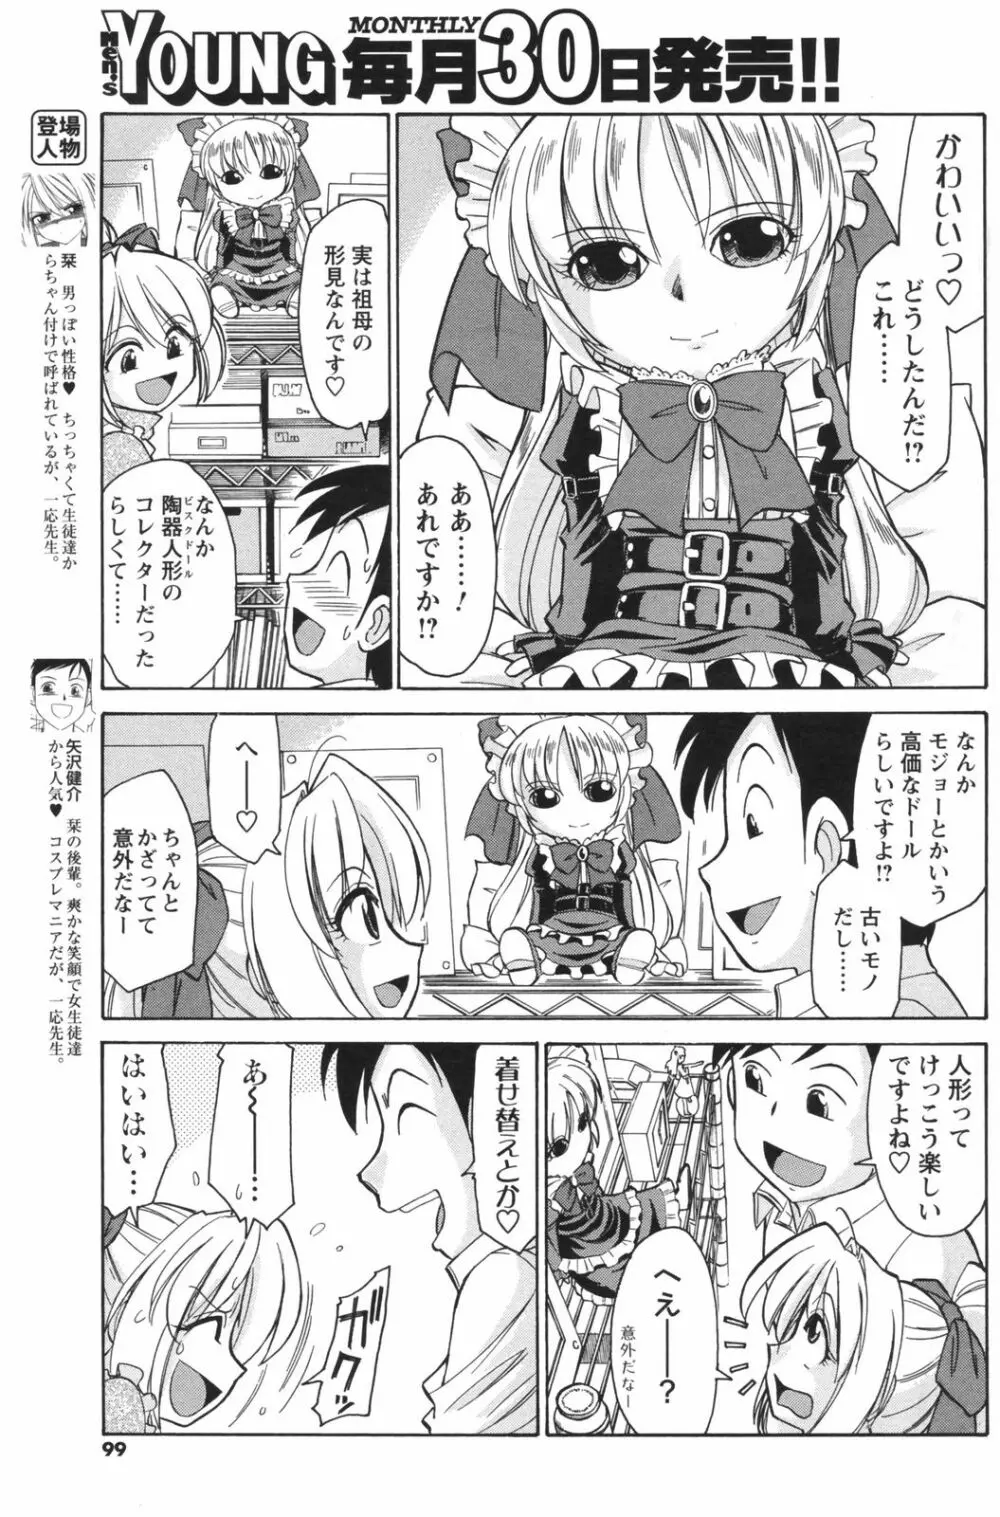 メンズヤングスペシャルIKAZUCHI雷 Vol.5 2008年3月号増刊 99ページ